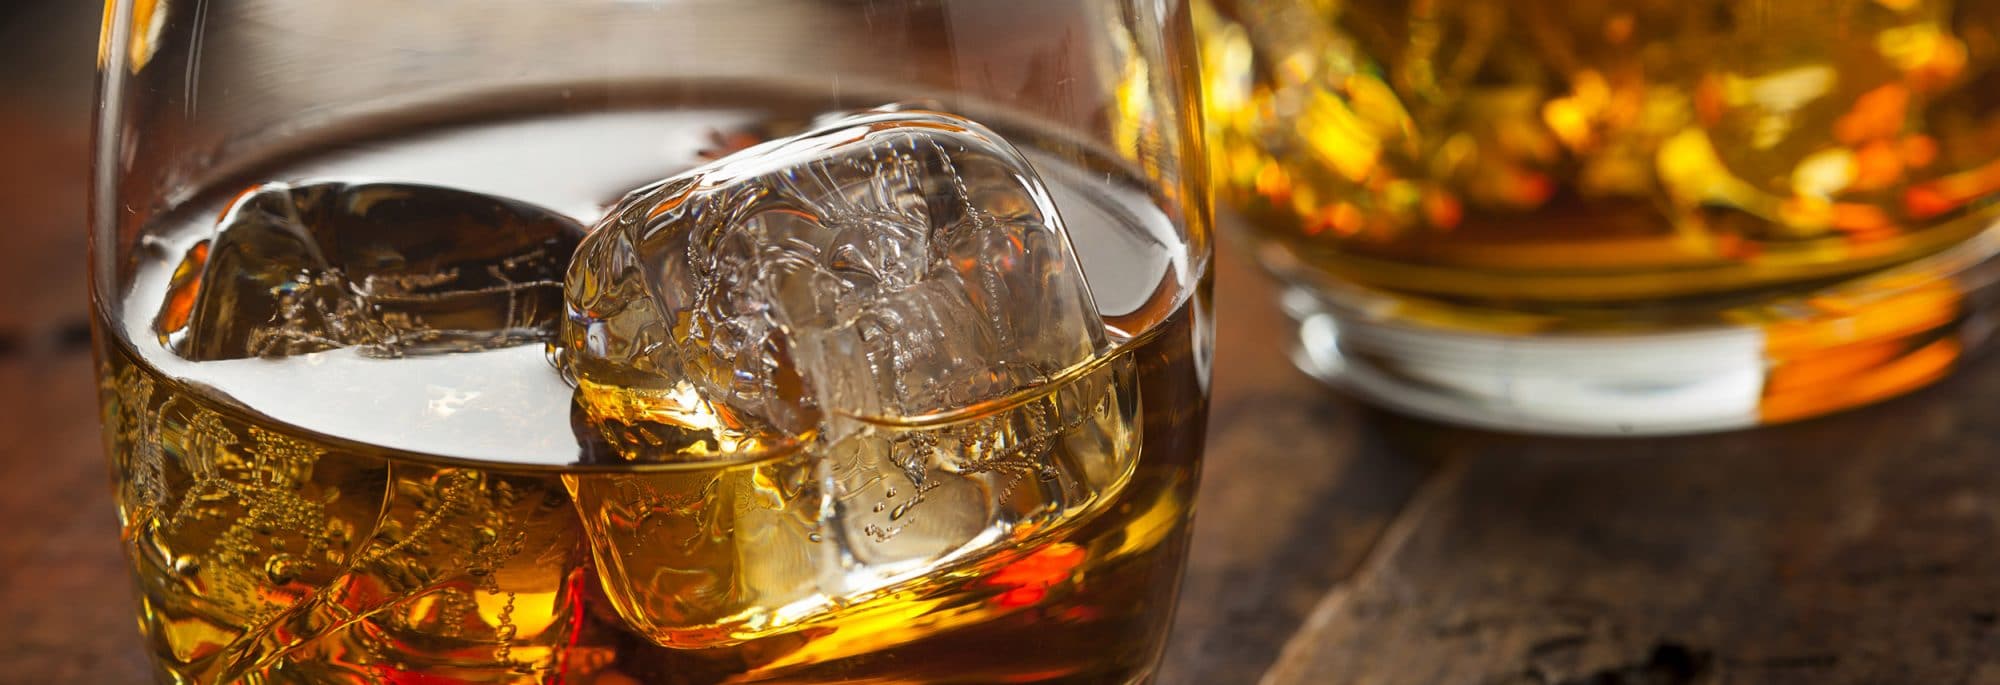 Simplicité de la dégustation du whisky - Whisky Sir Edward's